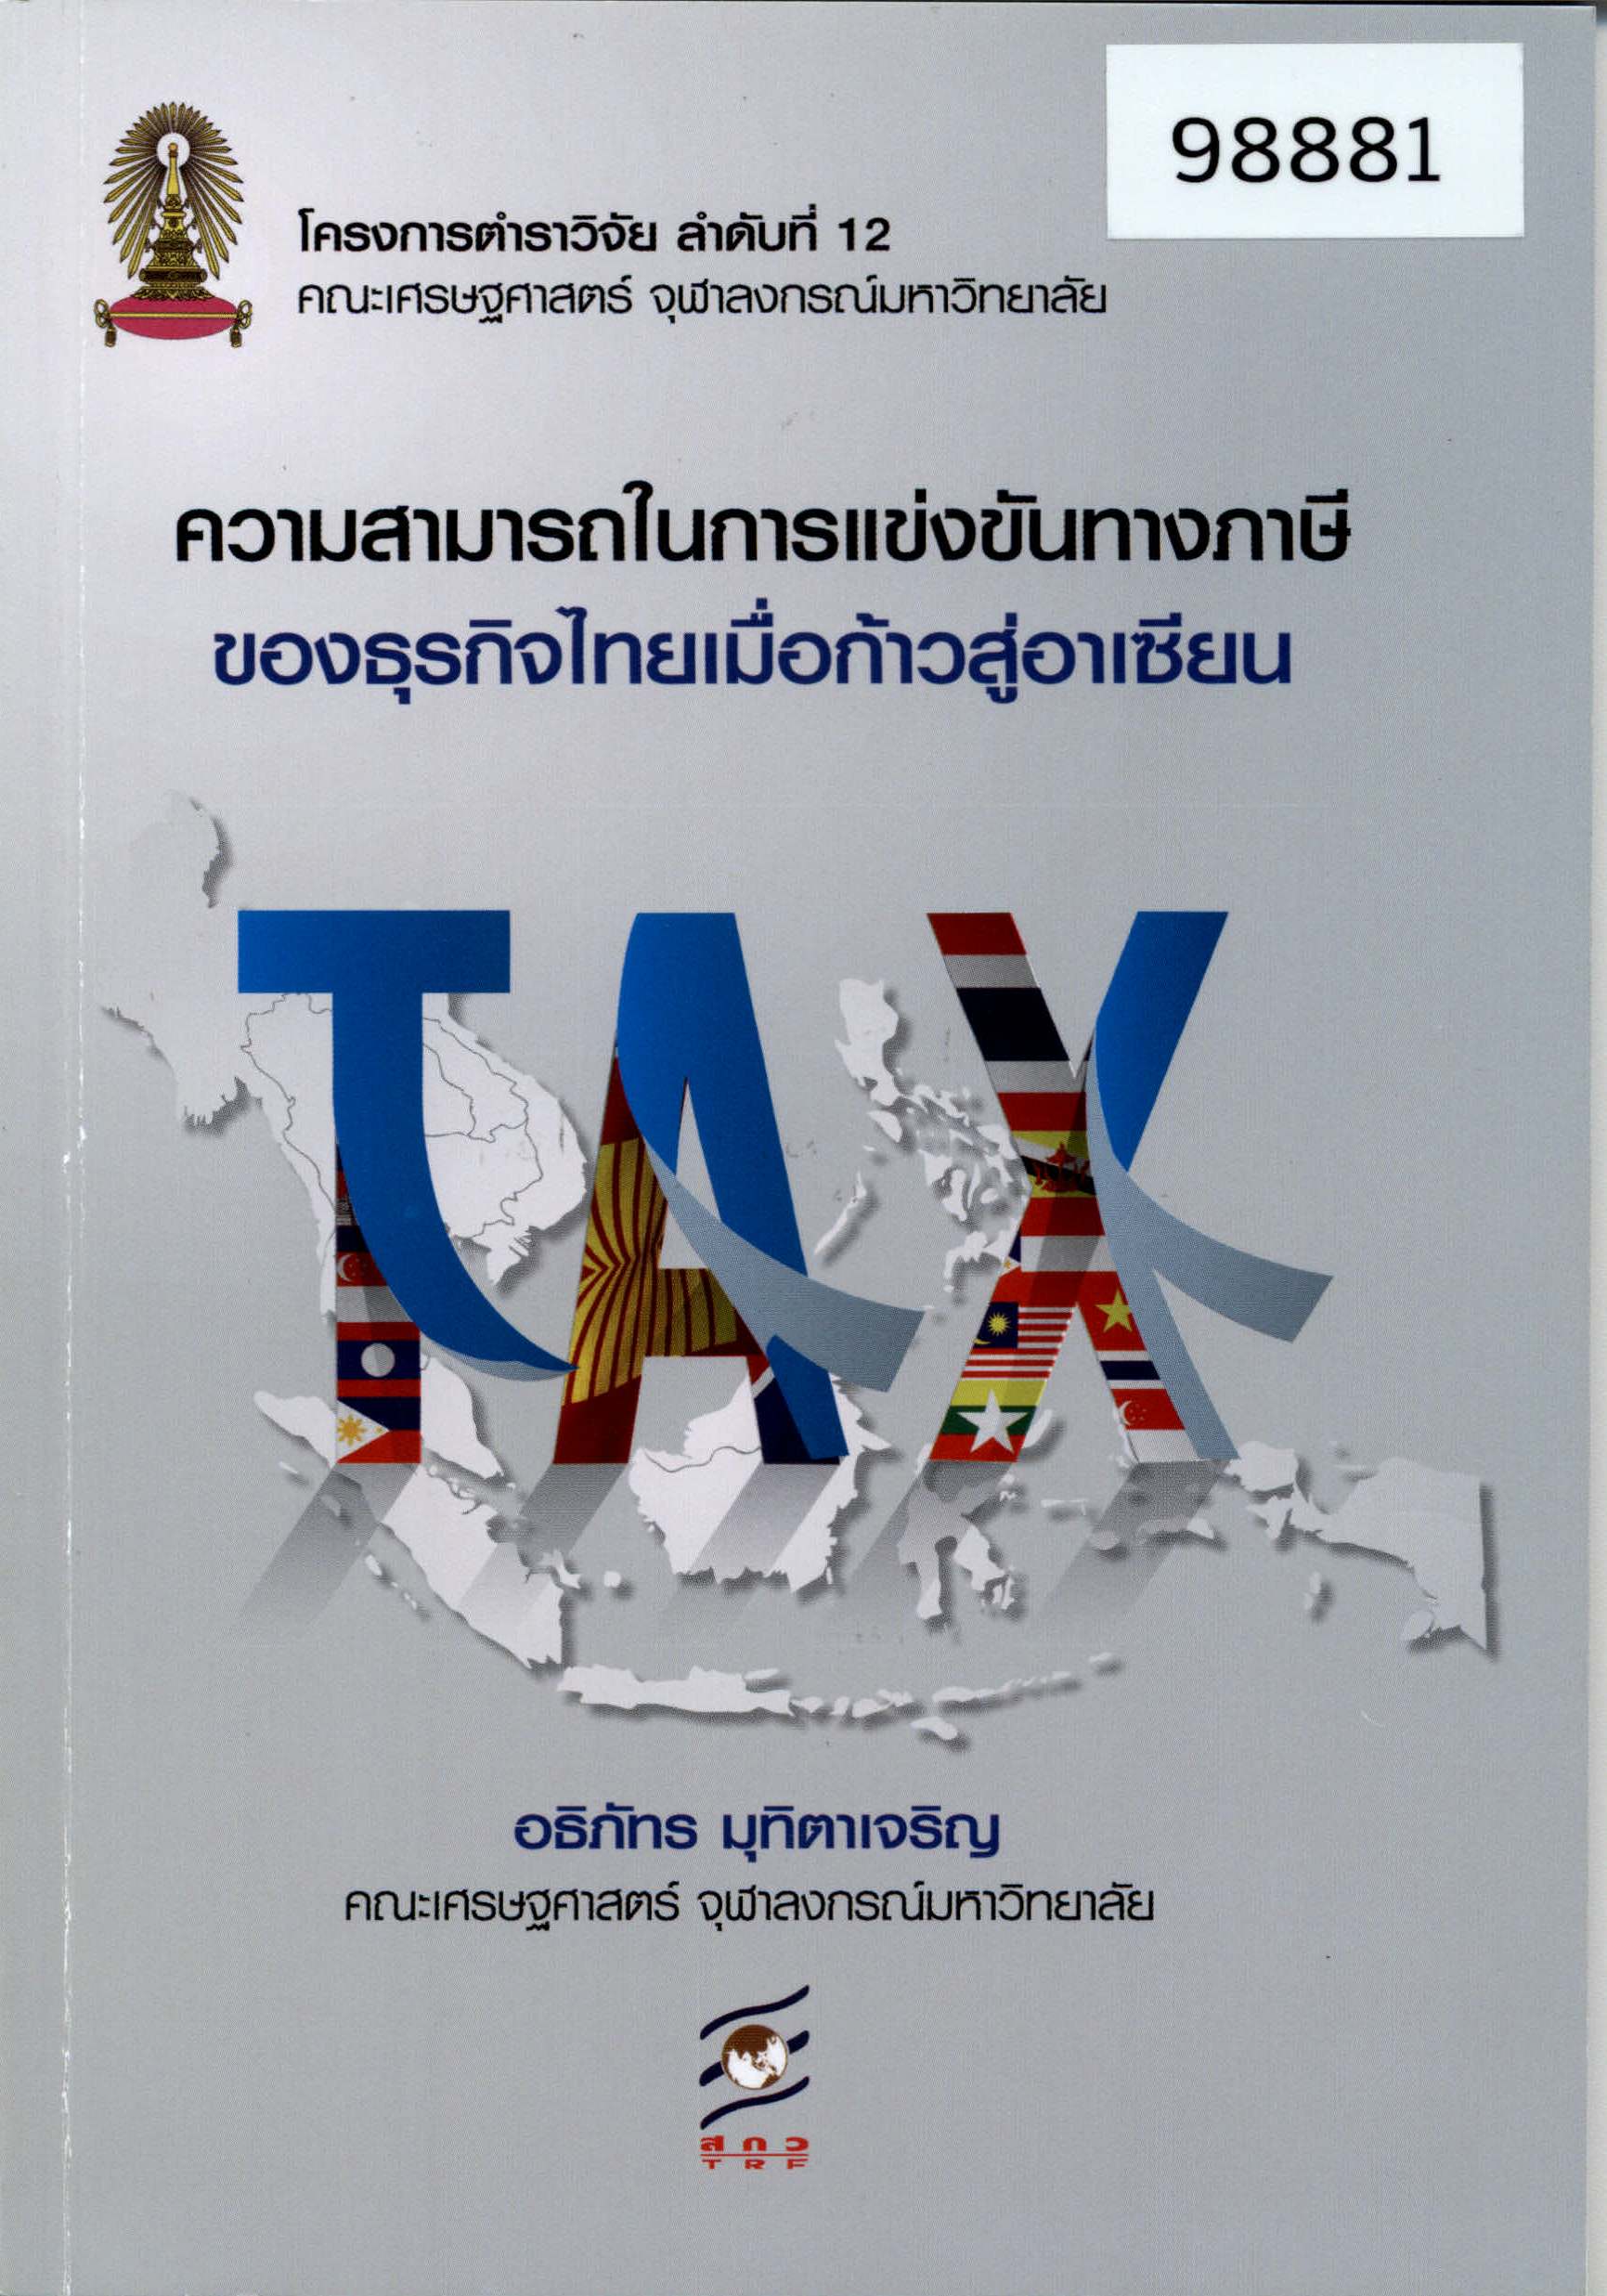 ความสามารถในการแข่งขันทางภาษีของธุรกิจไทยเมื่อก้าวสู่อาเซียน